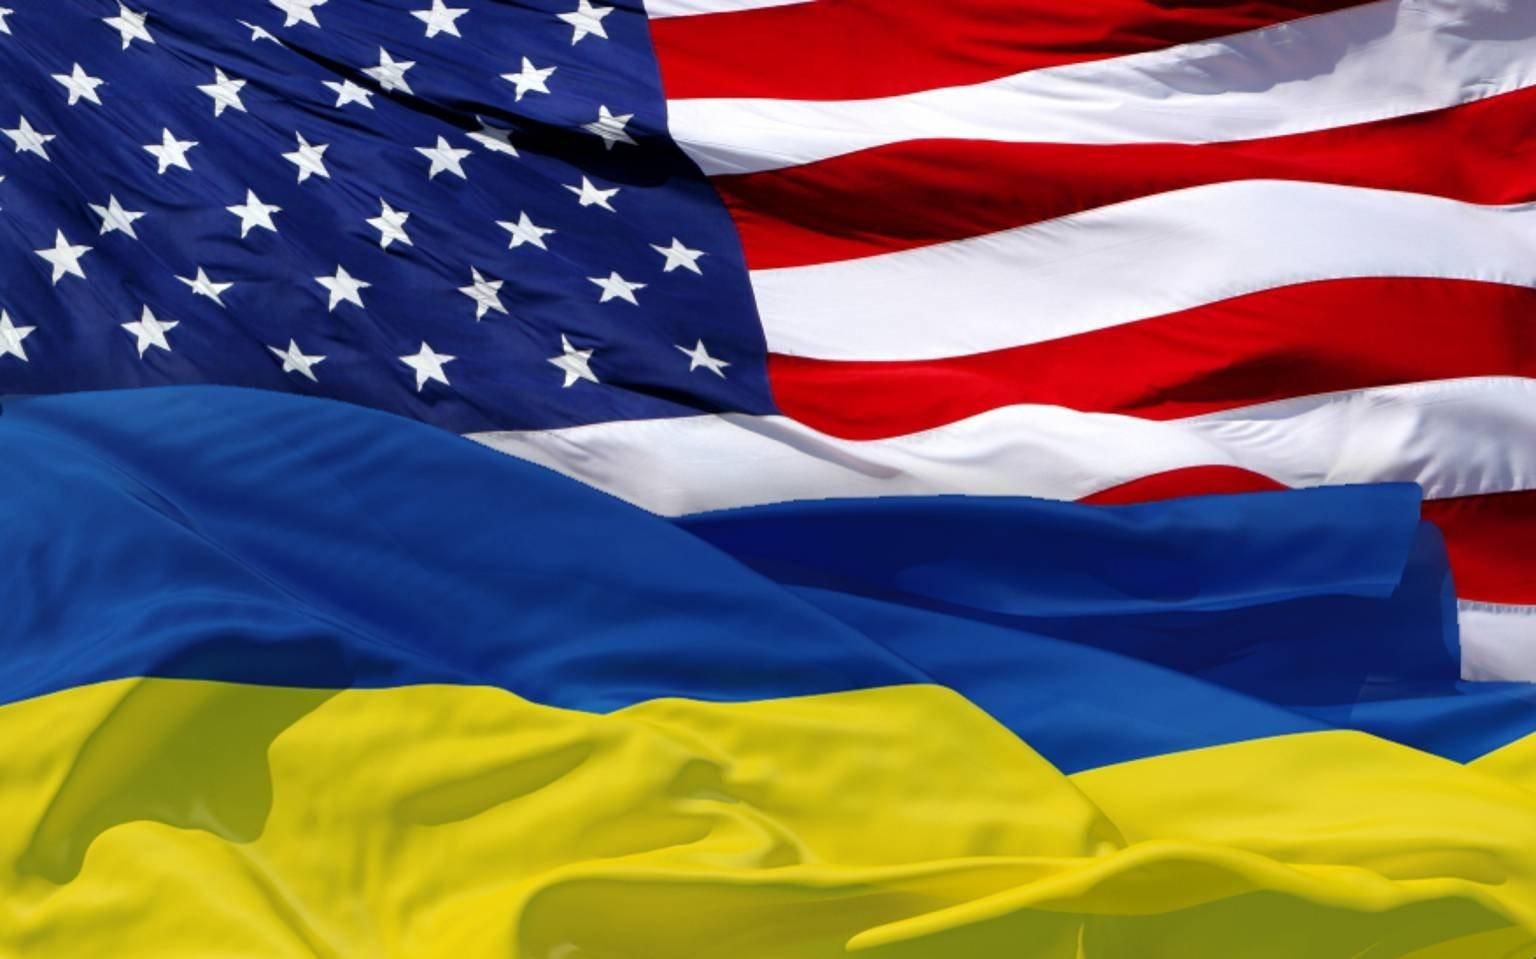 День незалежності США: як розвивалися українсько-американські відносини